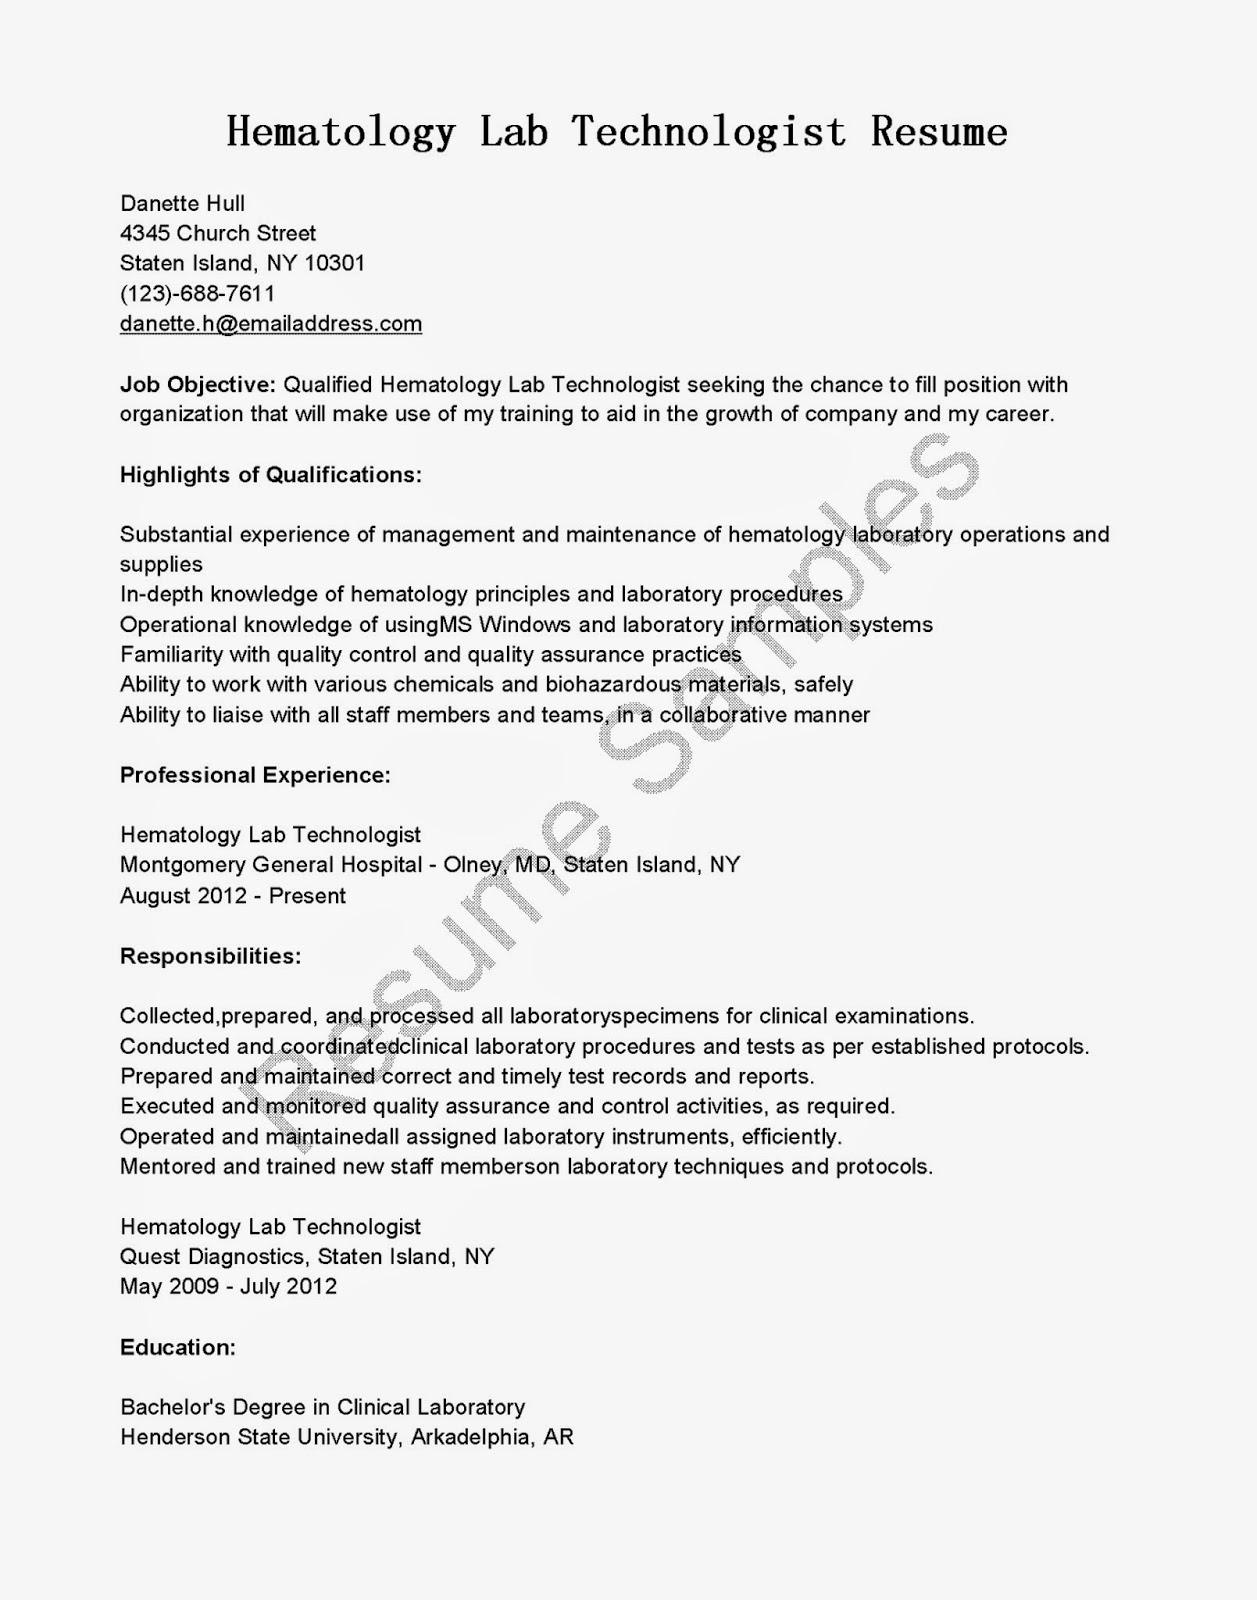 Resume for a laboratory technician